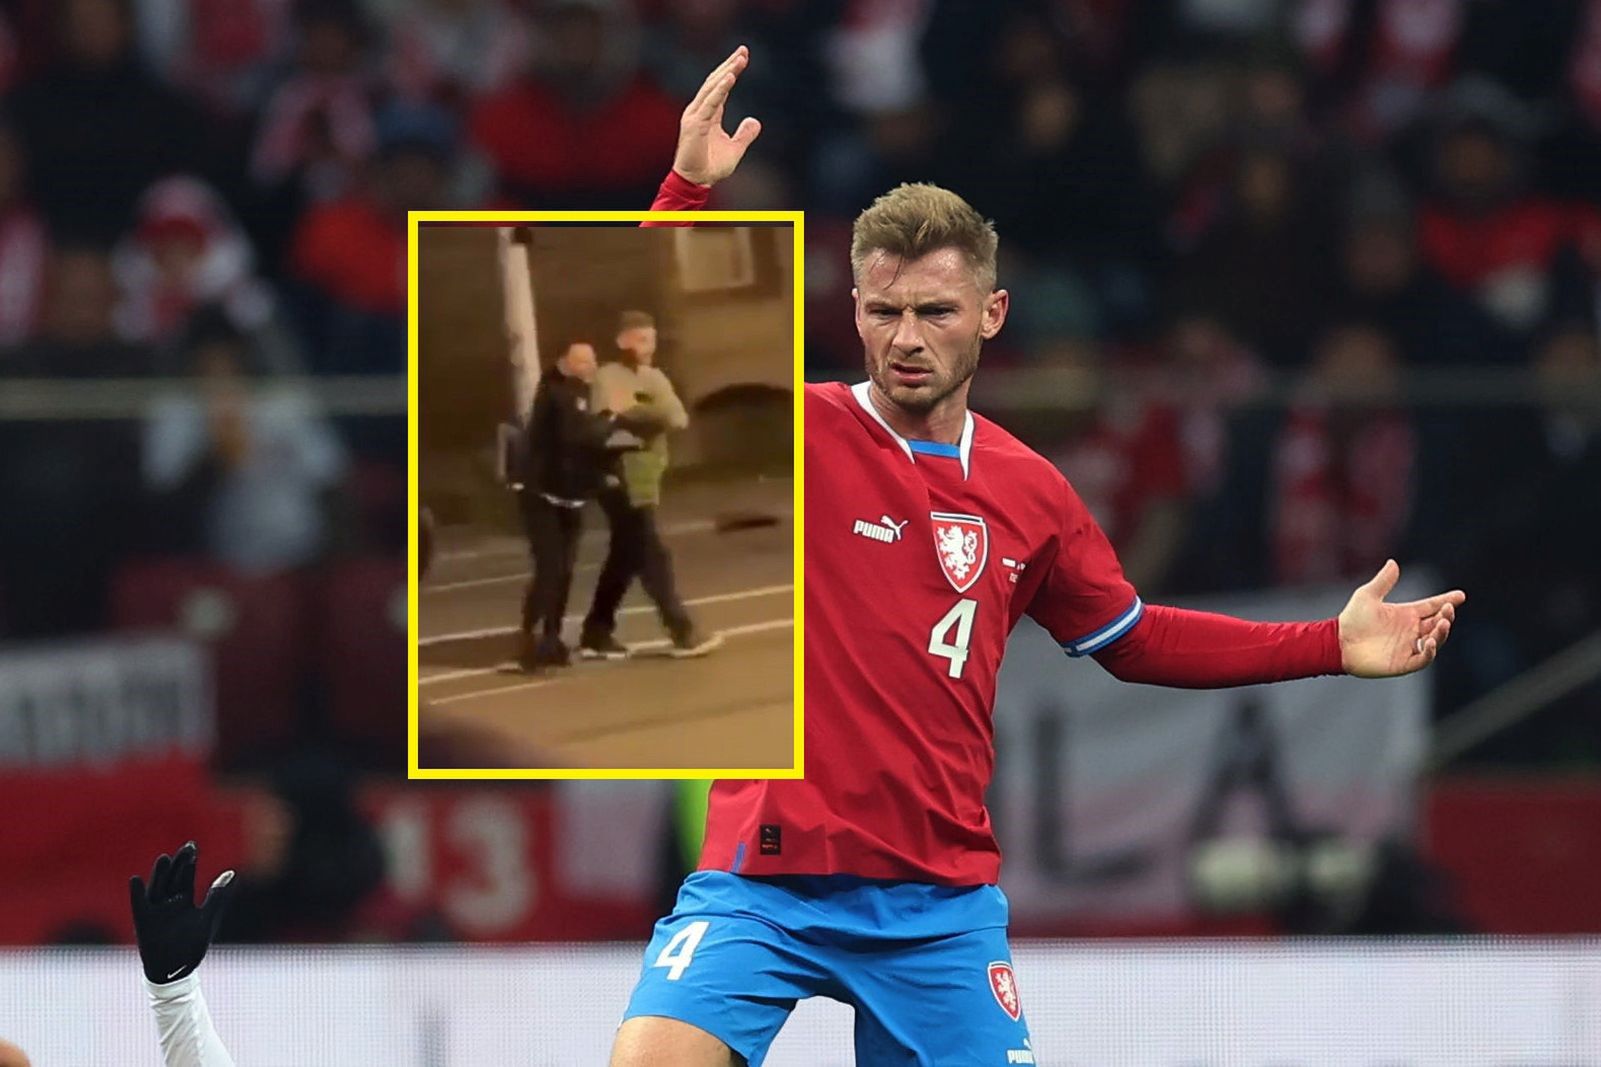 Obraz nędzy i rozpaczy. Pijany czeski piłkarz prawie wpadł pod samochód